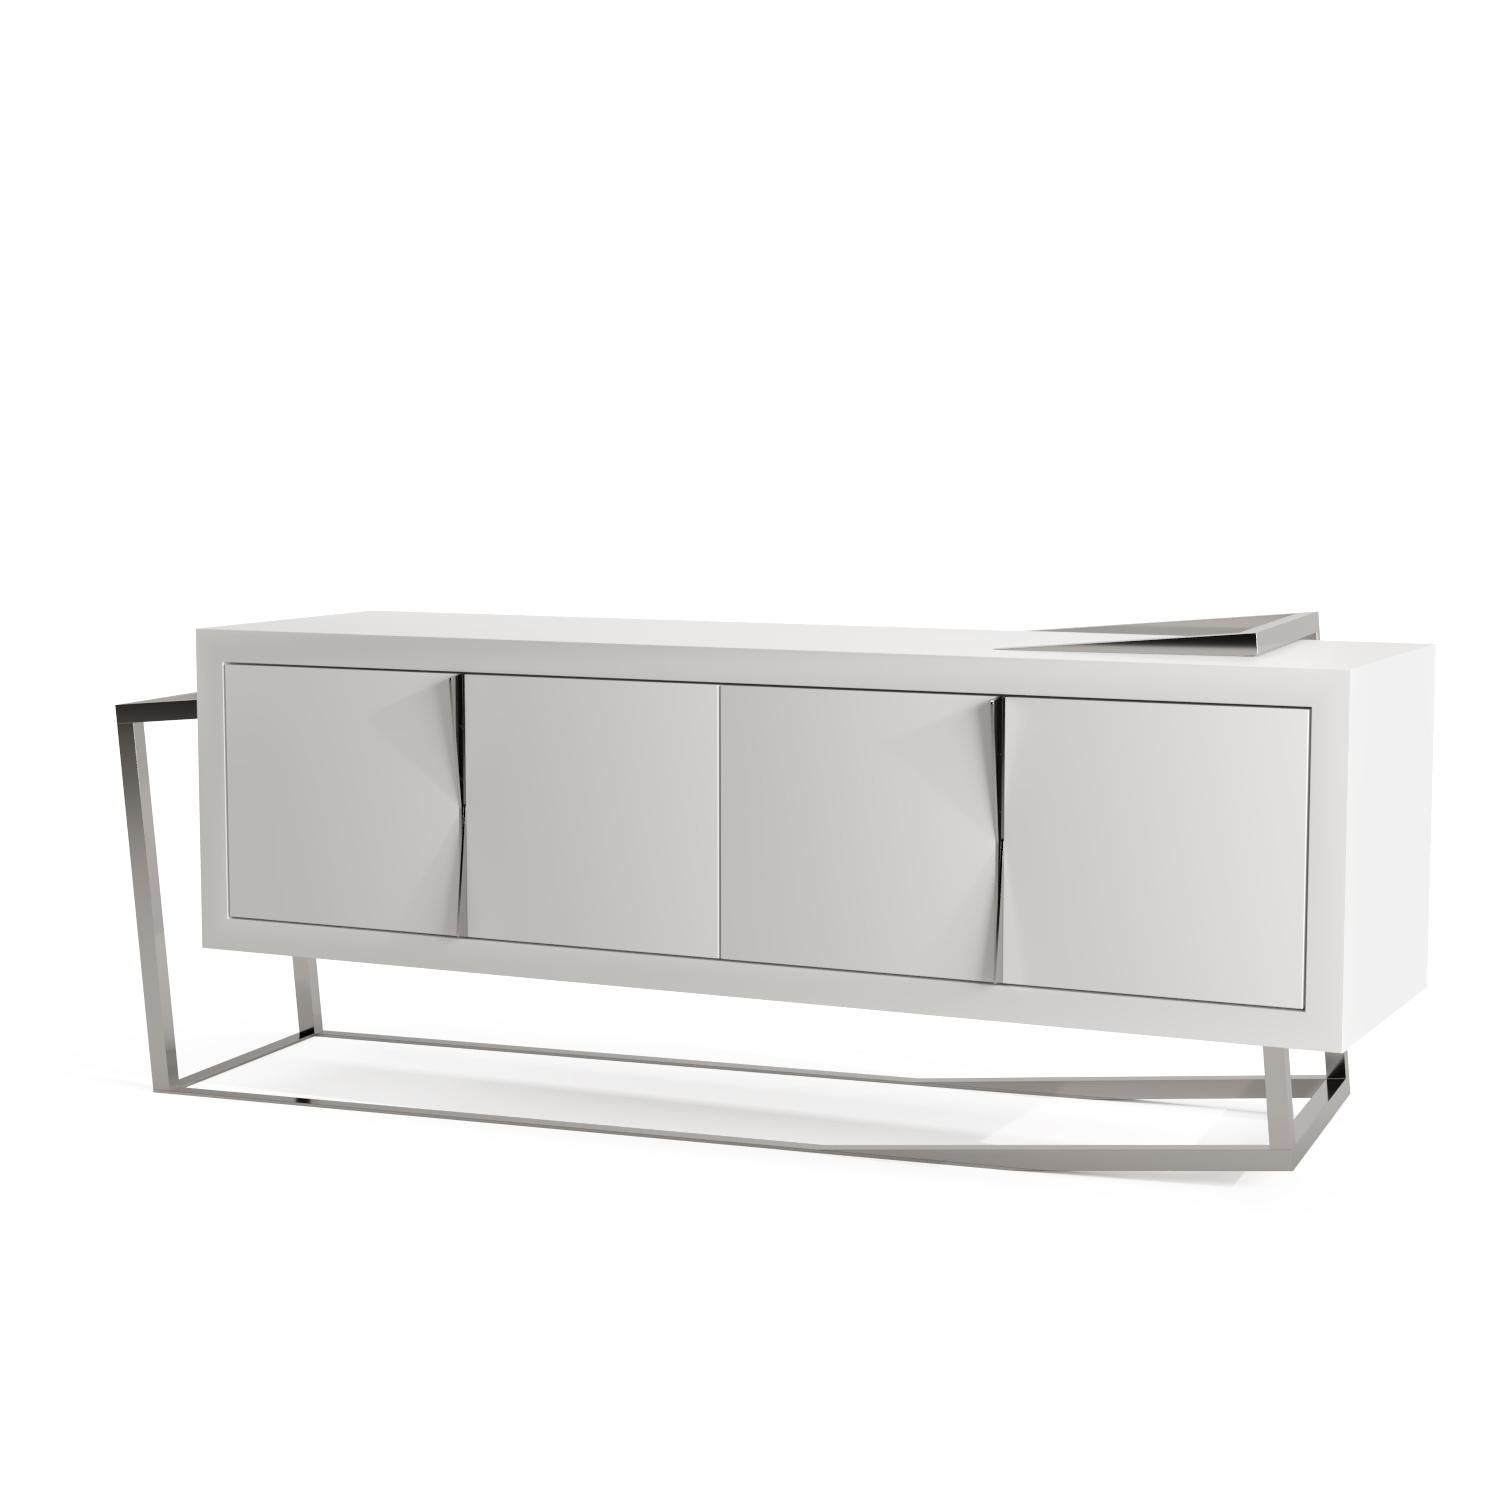 La crédence Sideboard ExCentric 1.0 est fabriquée en bois laqué blanc et en acier inoxydable brossé et peut être placée dans une salle à manger ou un bureau. Son design contemporain et audacieux remet en question les perceptions d'un buffet